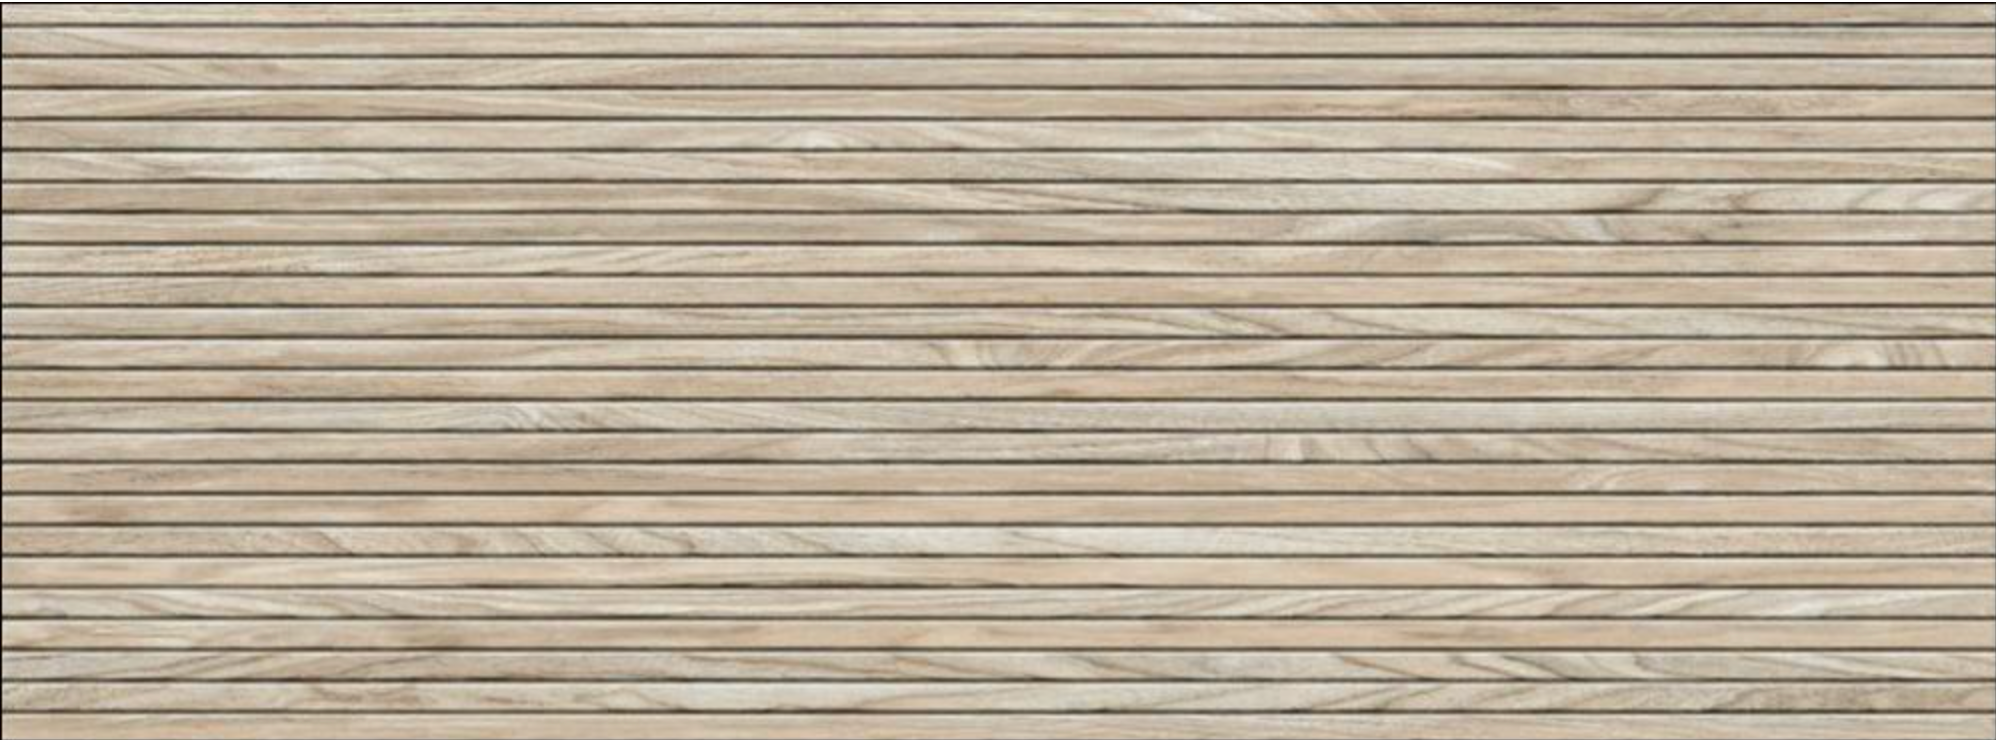 Repose 18x48 Cipres Wood Panel Look Ceramic Tile